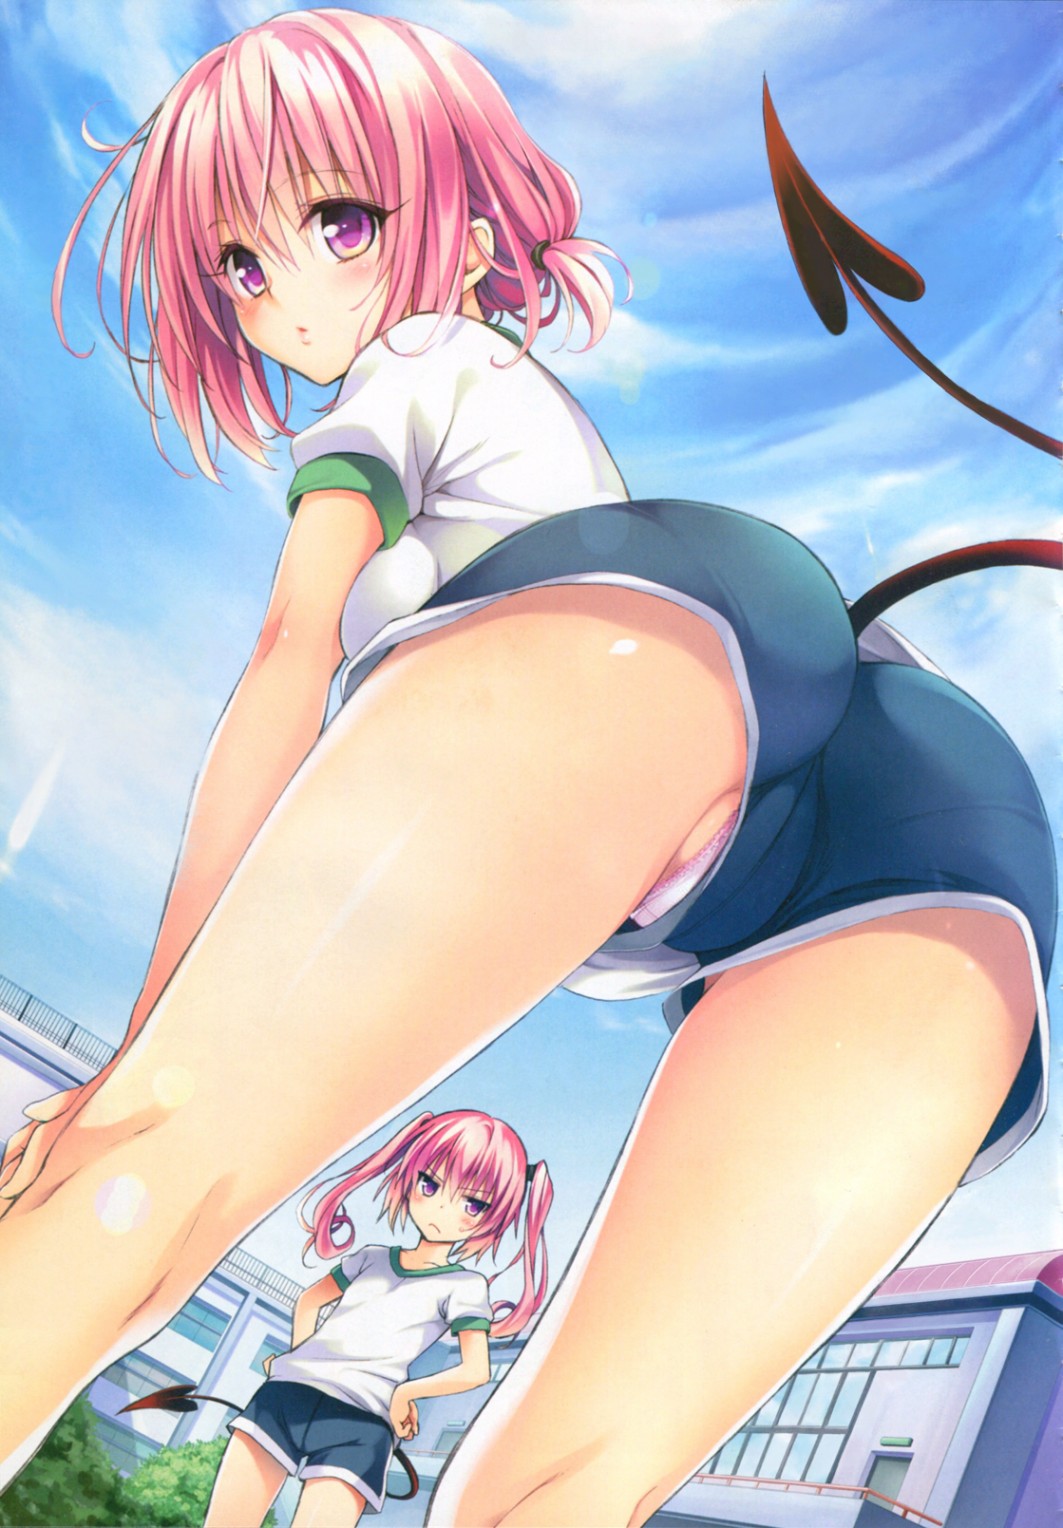 Hentai Upskirts - Anime schoolgirl with tail pov upskirt up shorts panties ...